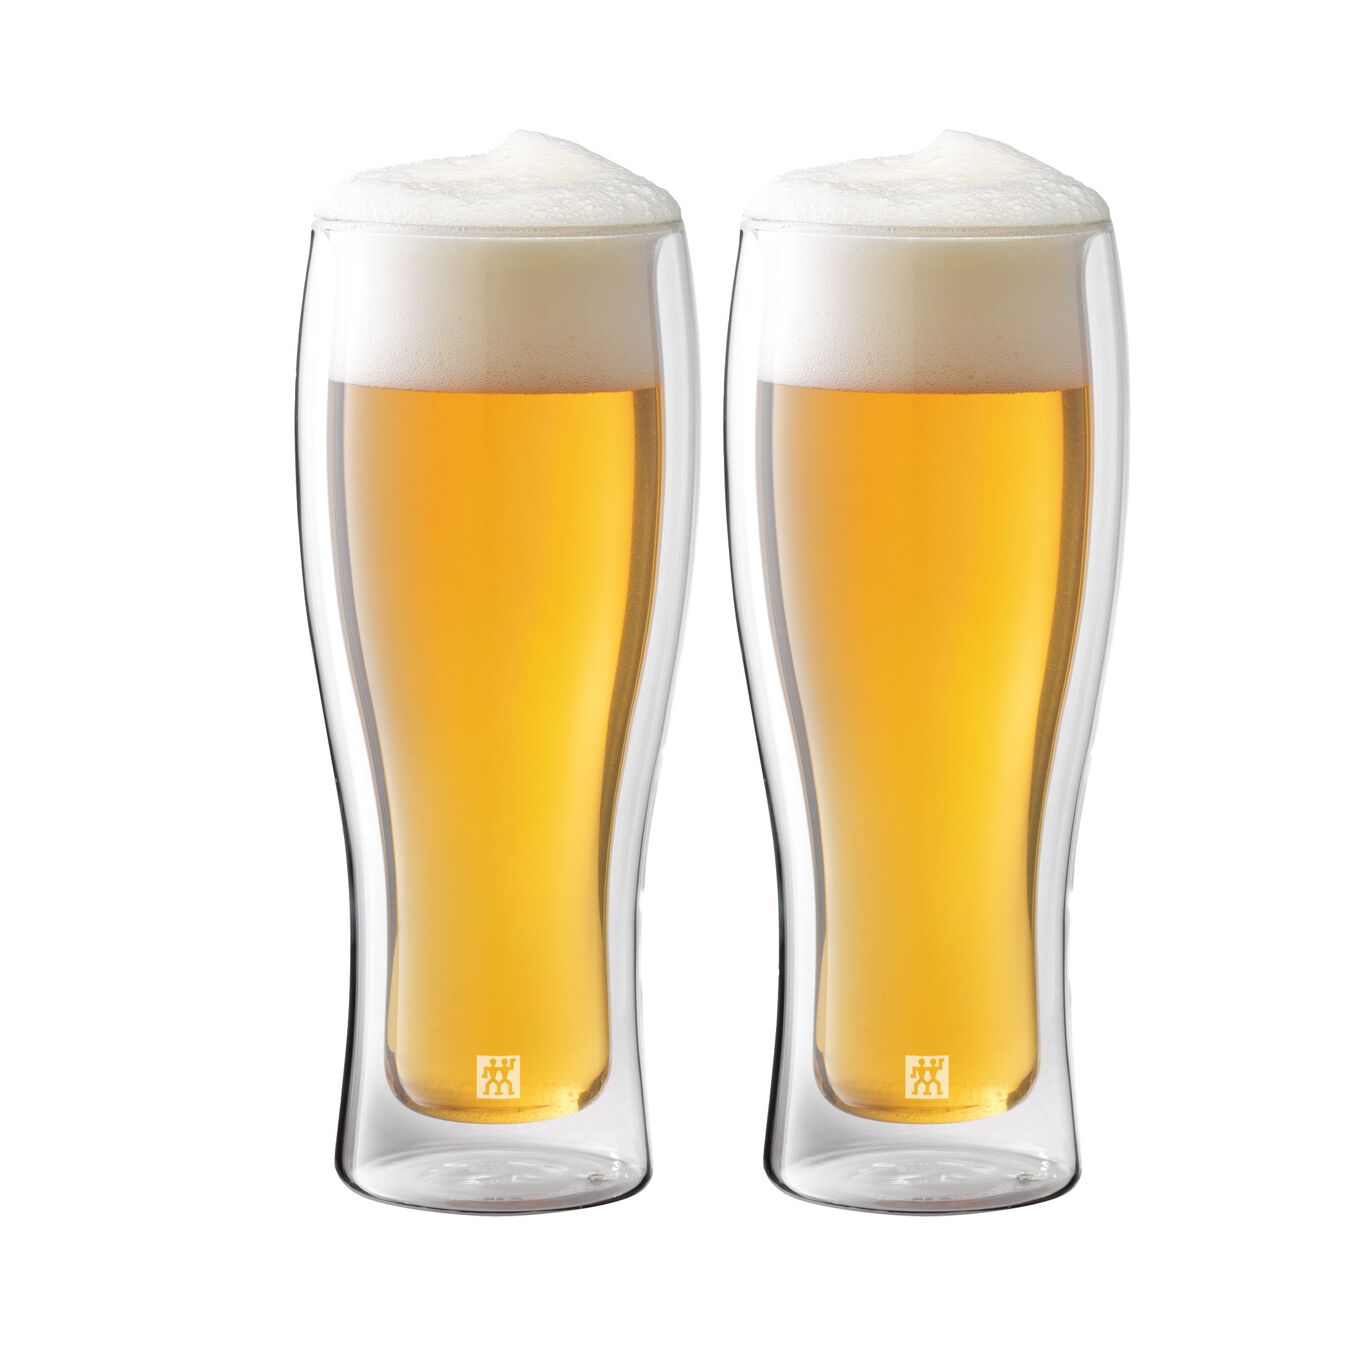 Bira Bardağı Seti | 2-adet,,large 2